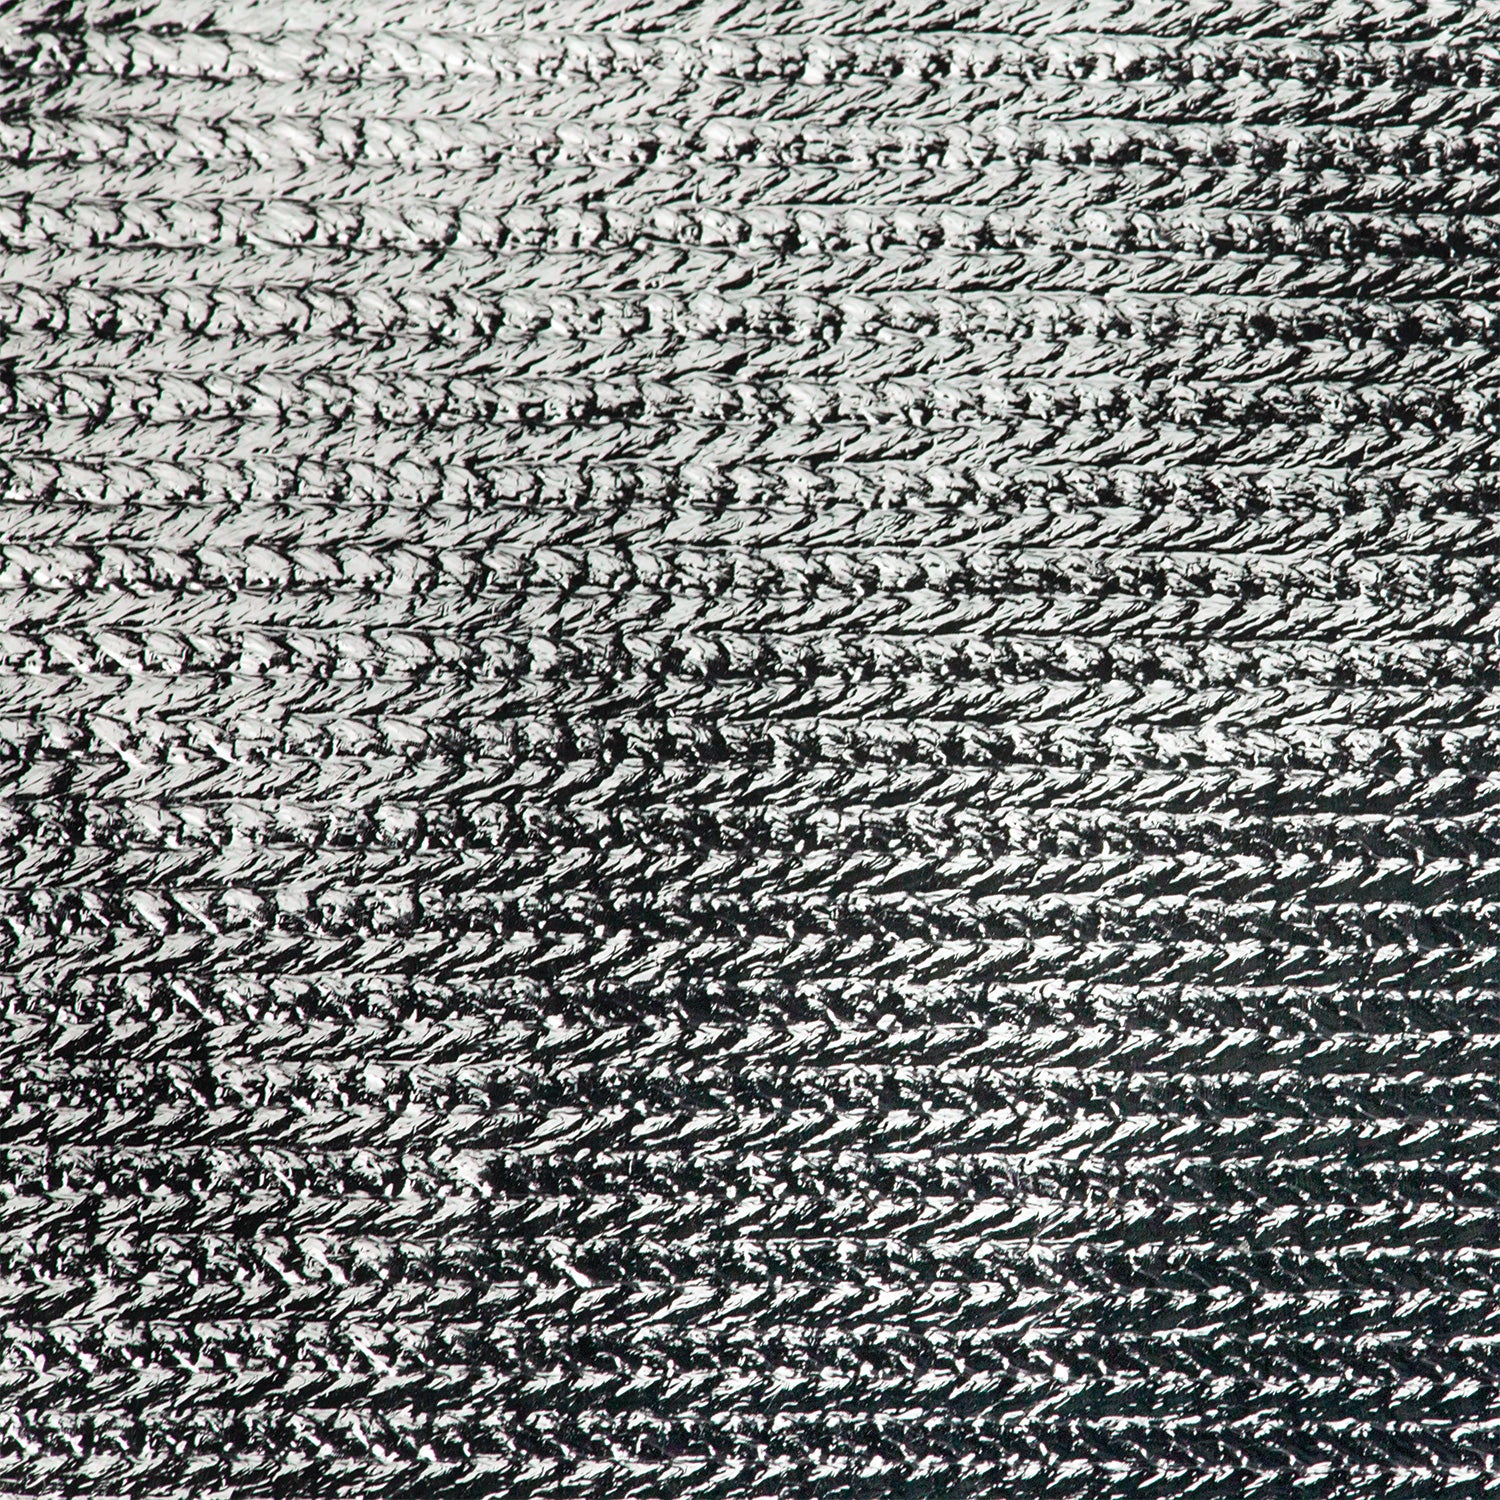 Scrim Jim Cine 2-in-1 Silver/White Bounce Fabric (6' x 6')